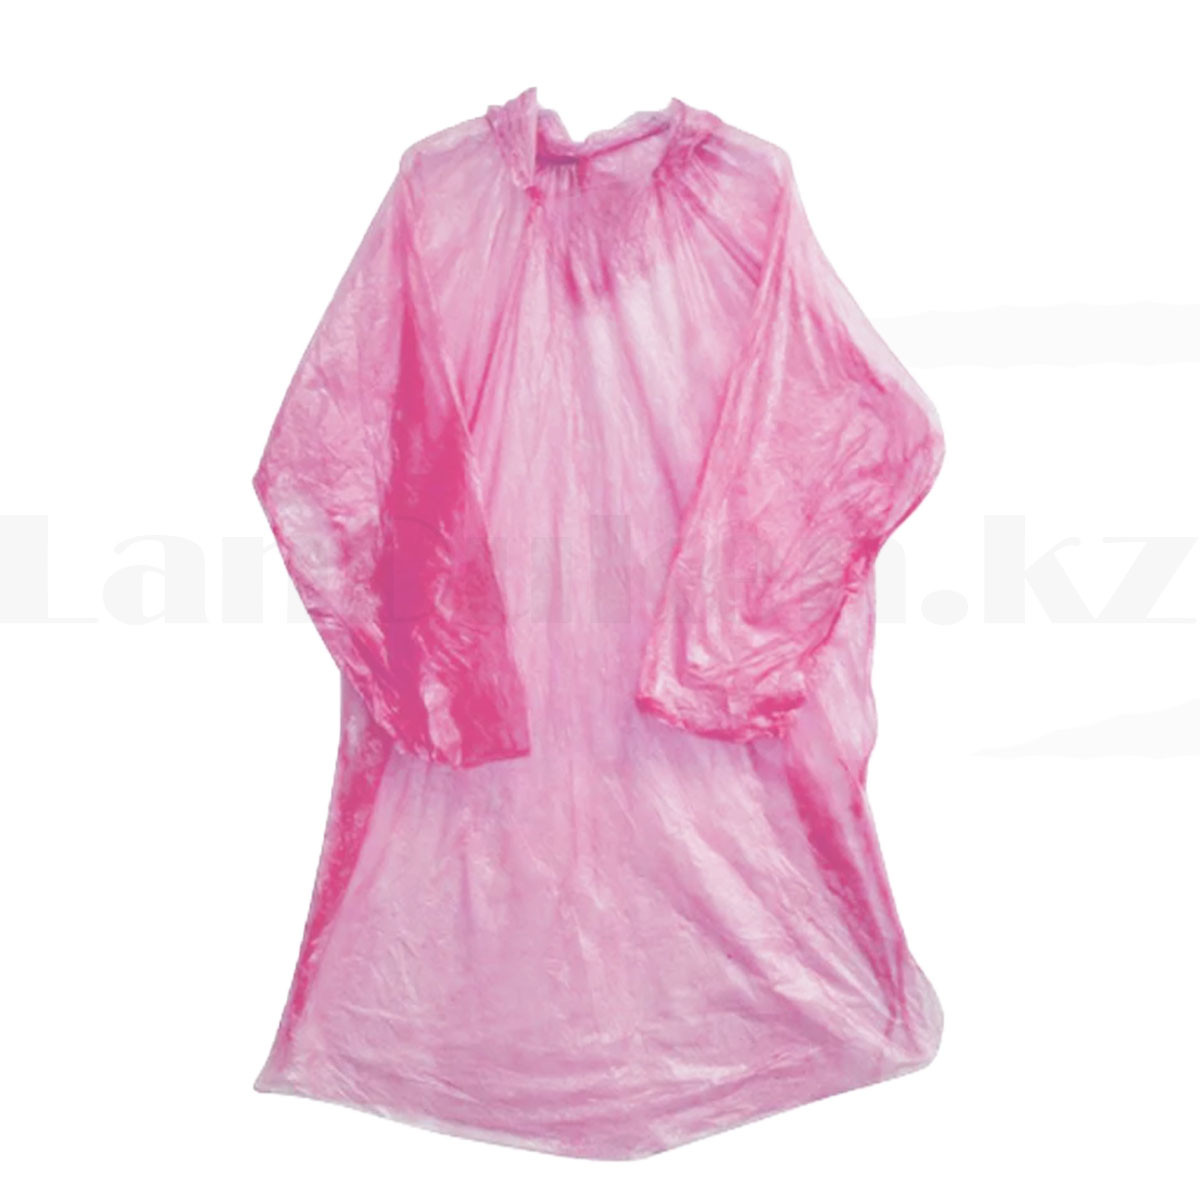 Универсальный плащ-дождевик одноразовый полиэтиленовый розовый